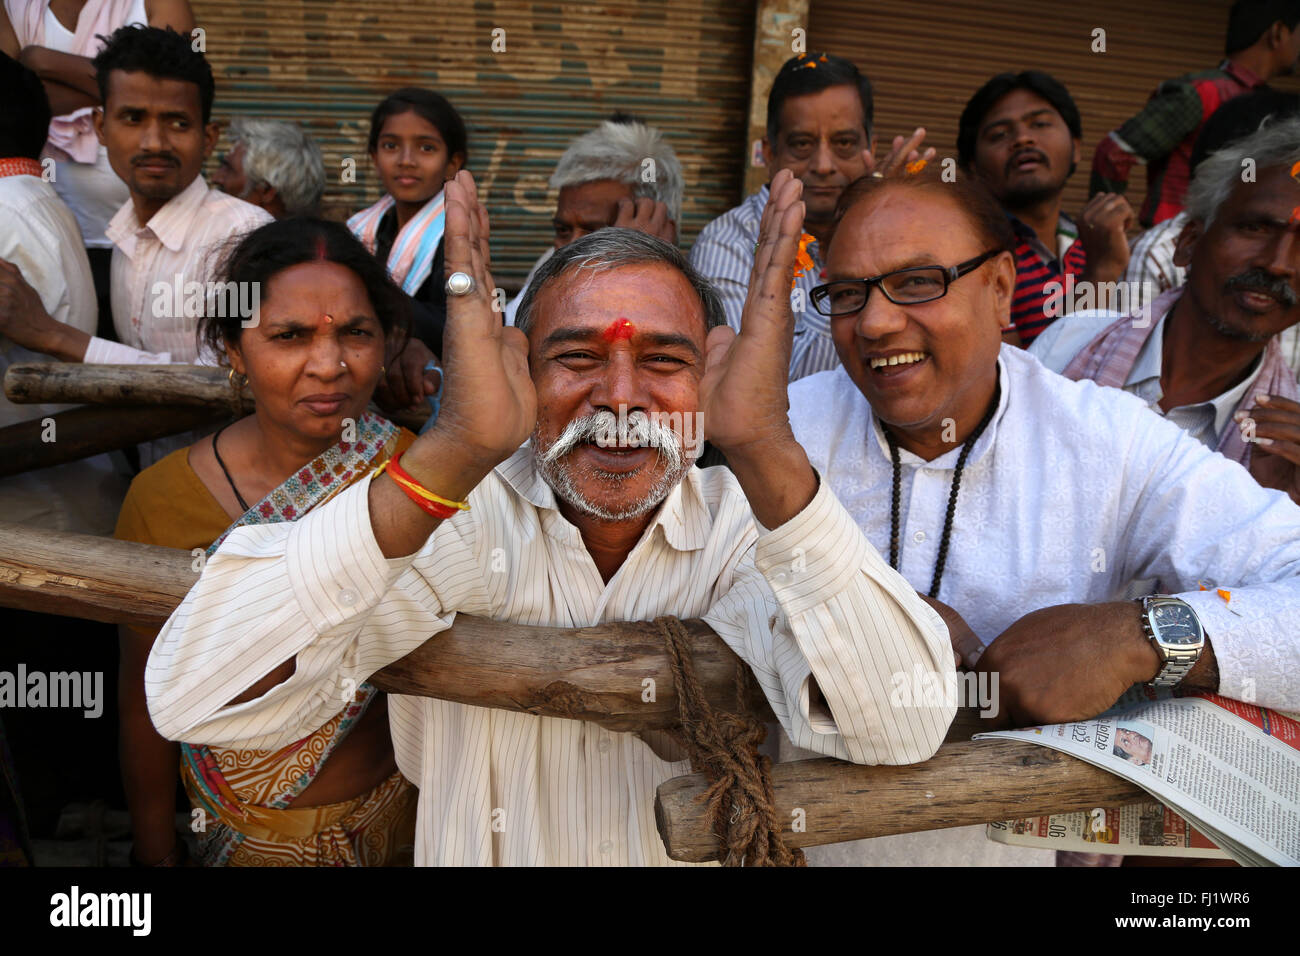 Heureux hindous dans la foule au cours de Shivaratri à Varanasi, en Inde Banque D'Images